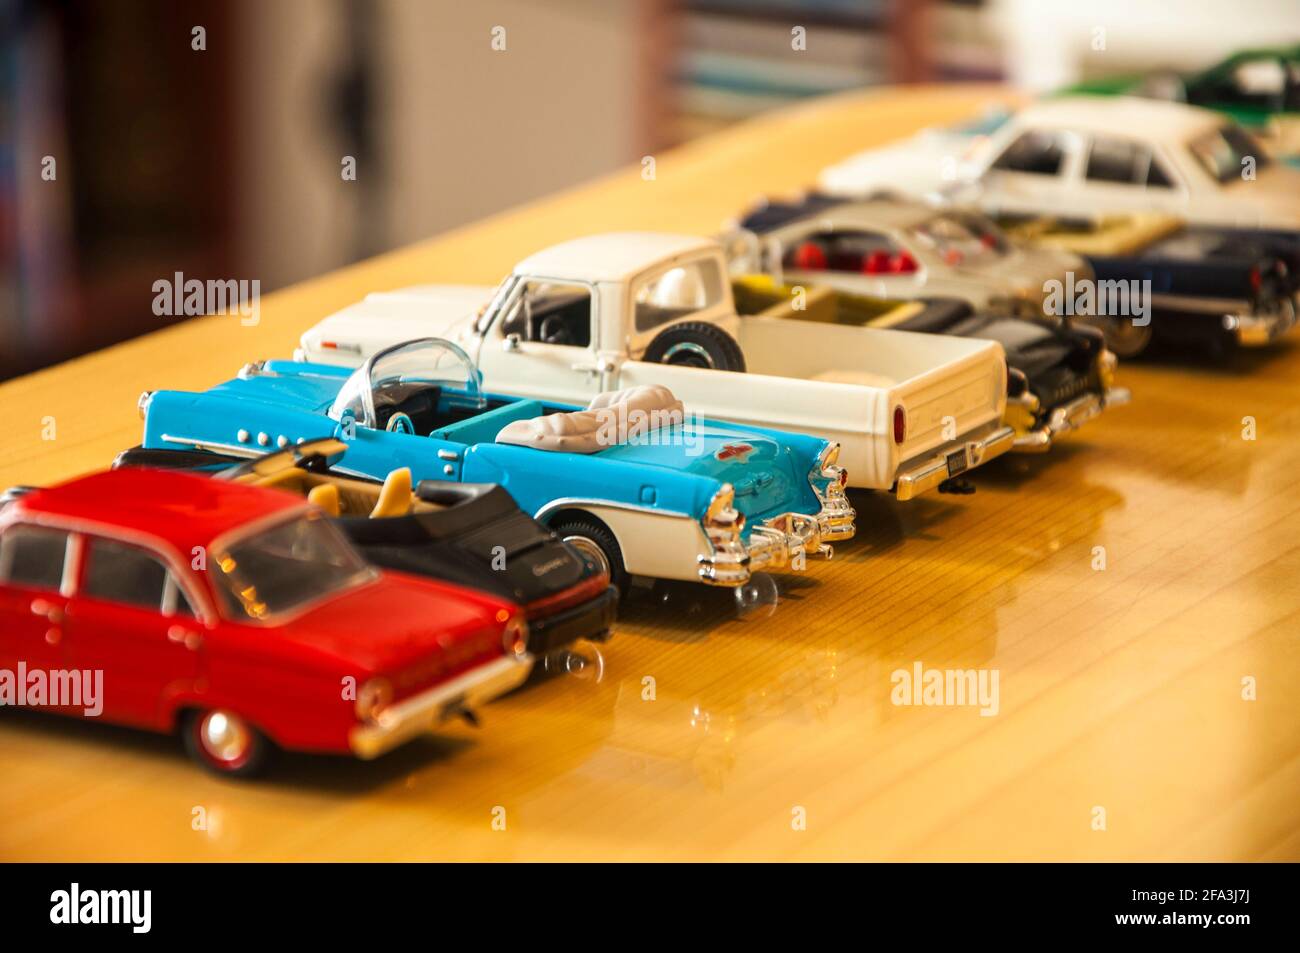 SOLIDO, Colección de 47 coches en miniatura, escala 1:43…